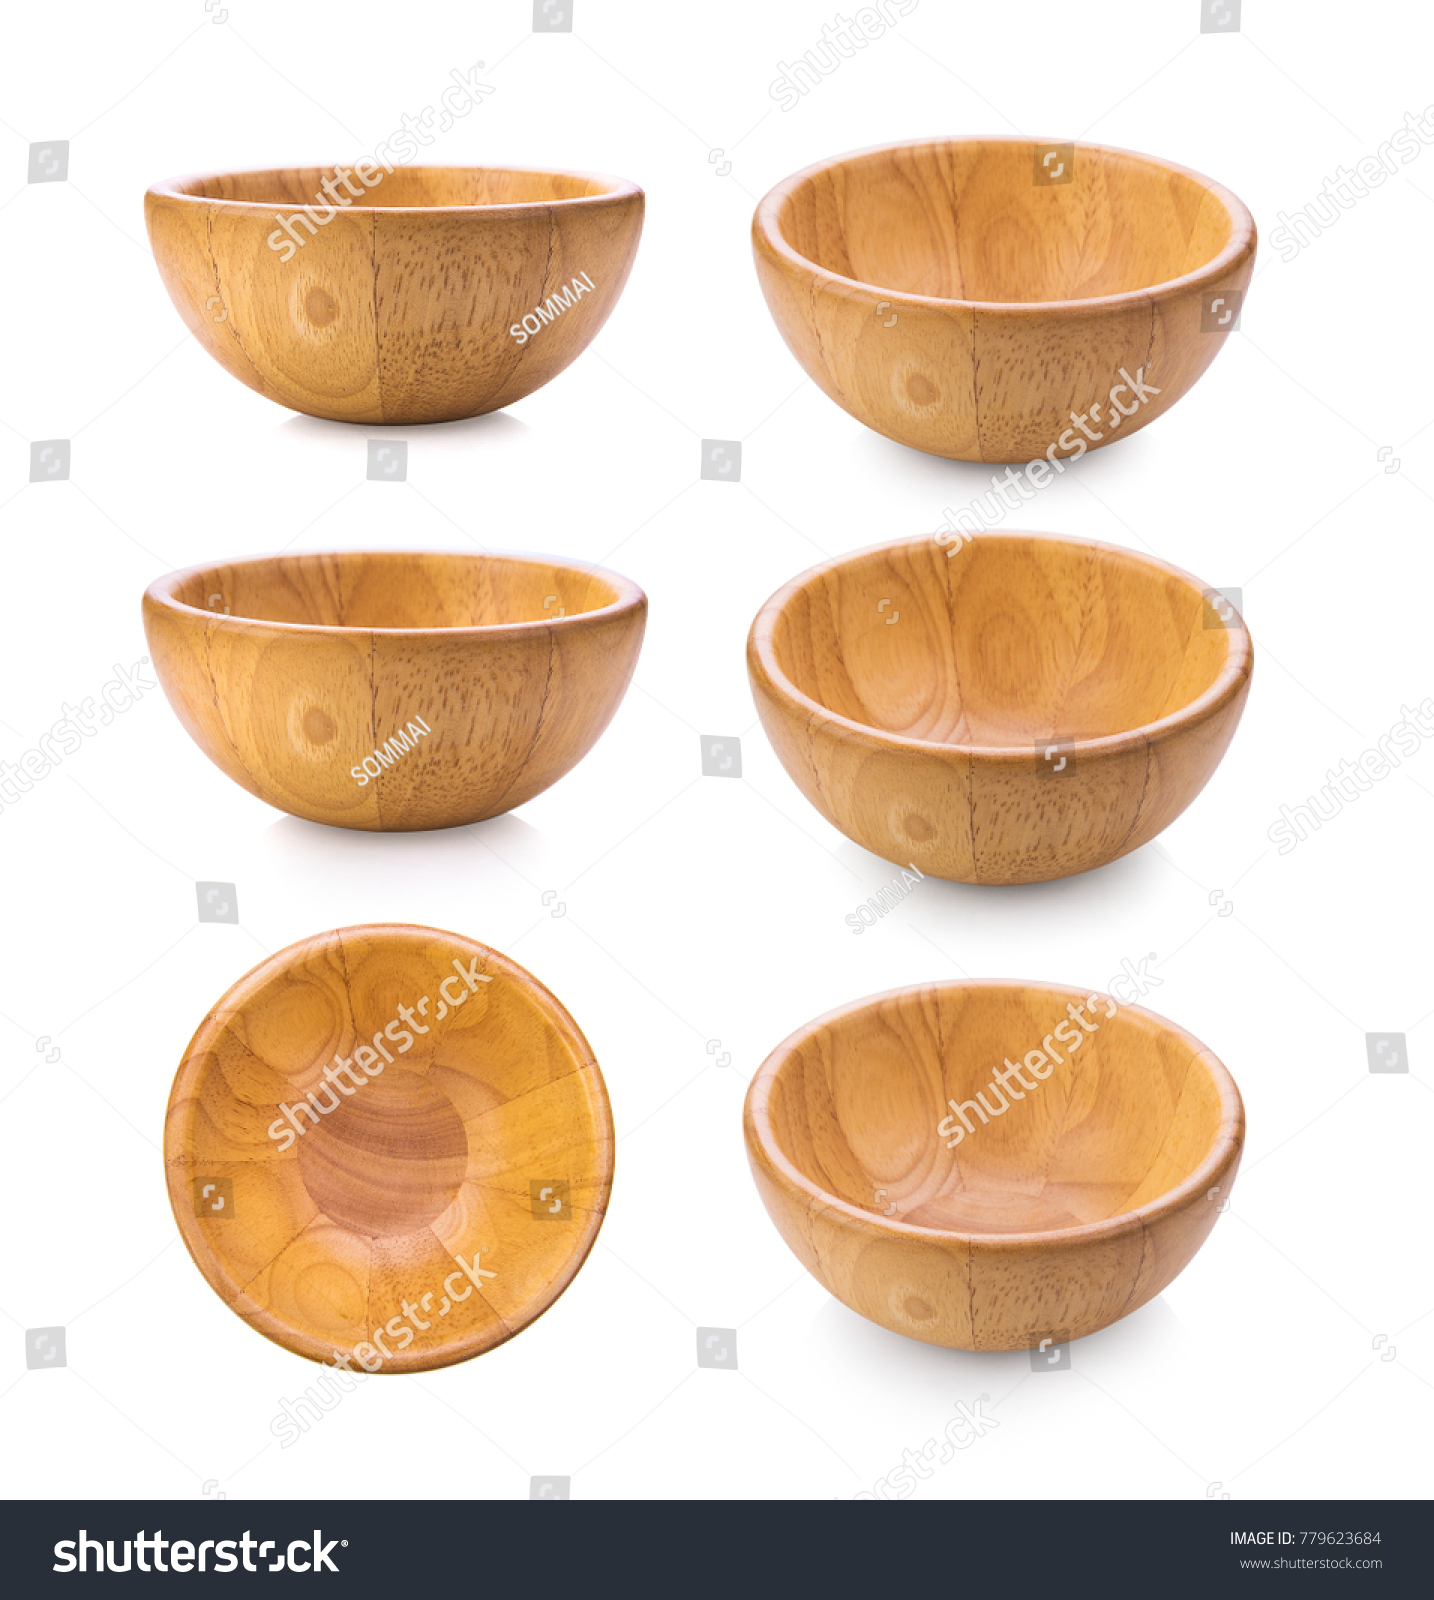 wood bowl on white background #779623684